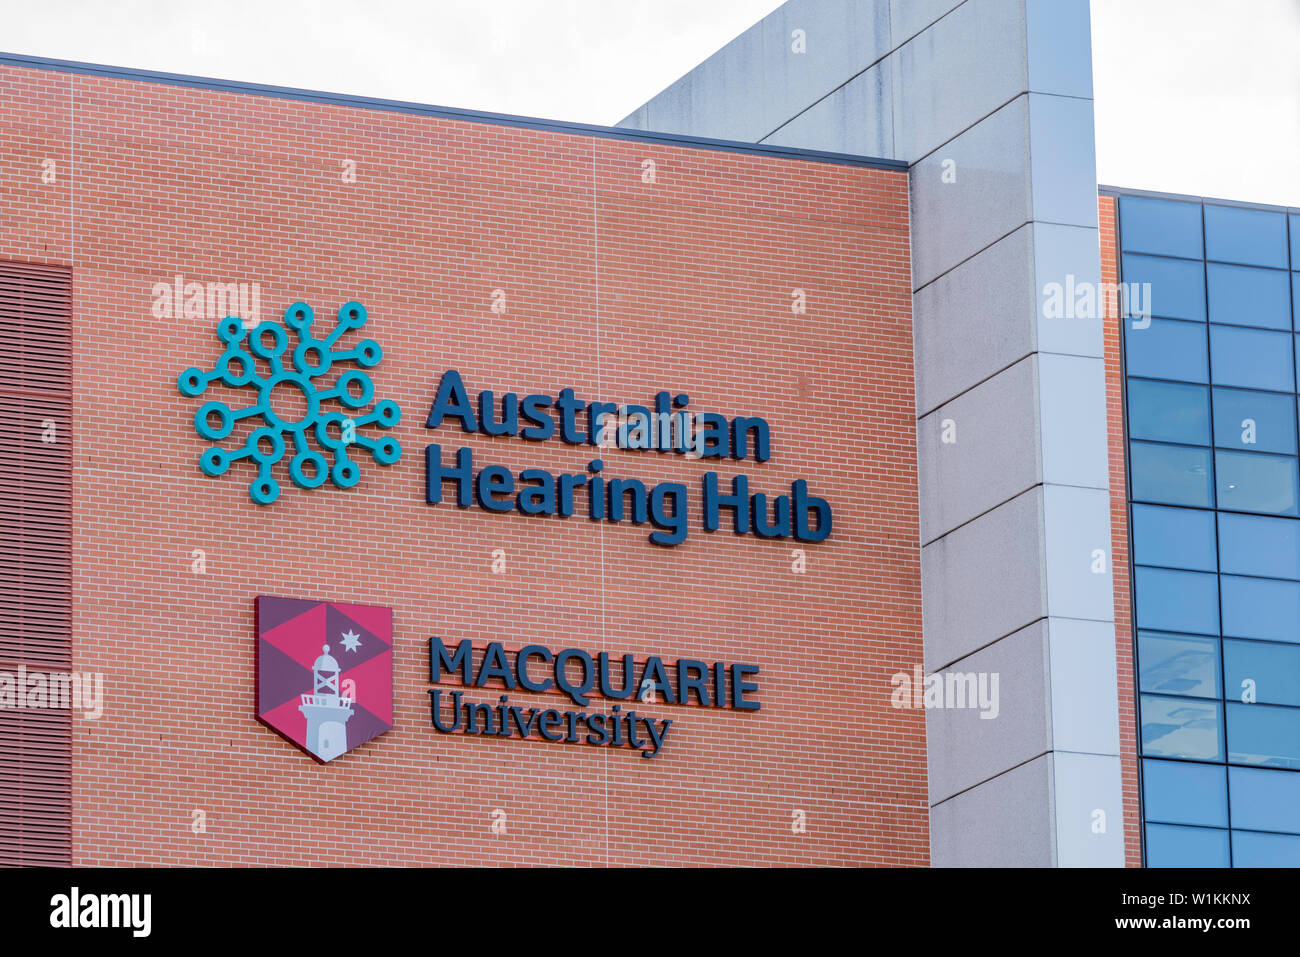 Teil der Macquarie University, die Australische Anhörung Nabe wird von Wissenschaftlern, Pädagogen und Experten in Linguistik, Audiologie und Anhörung Wissenschaft Stockfoto